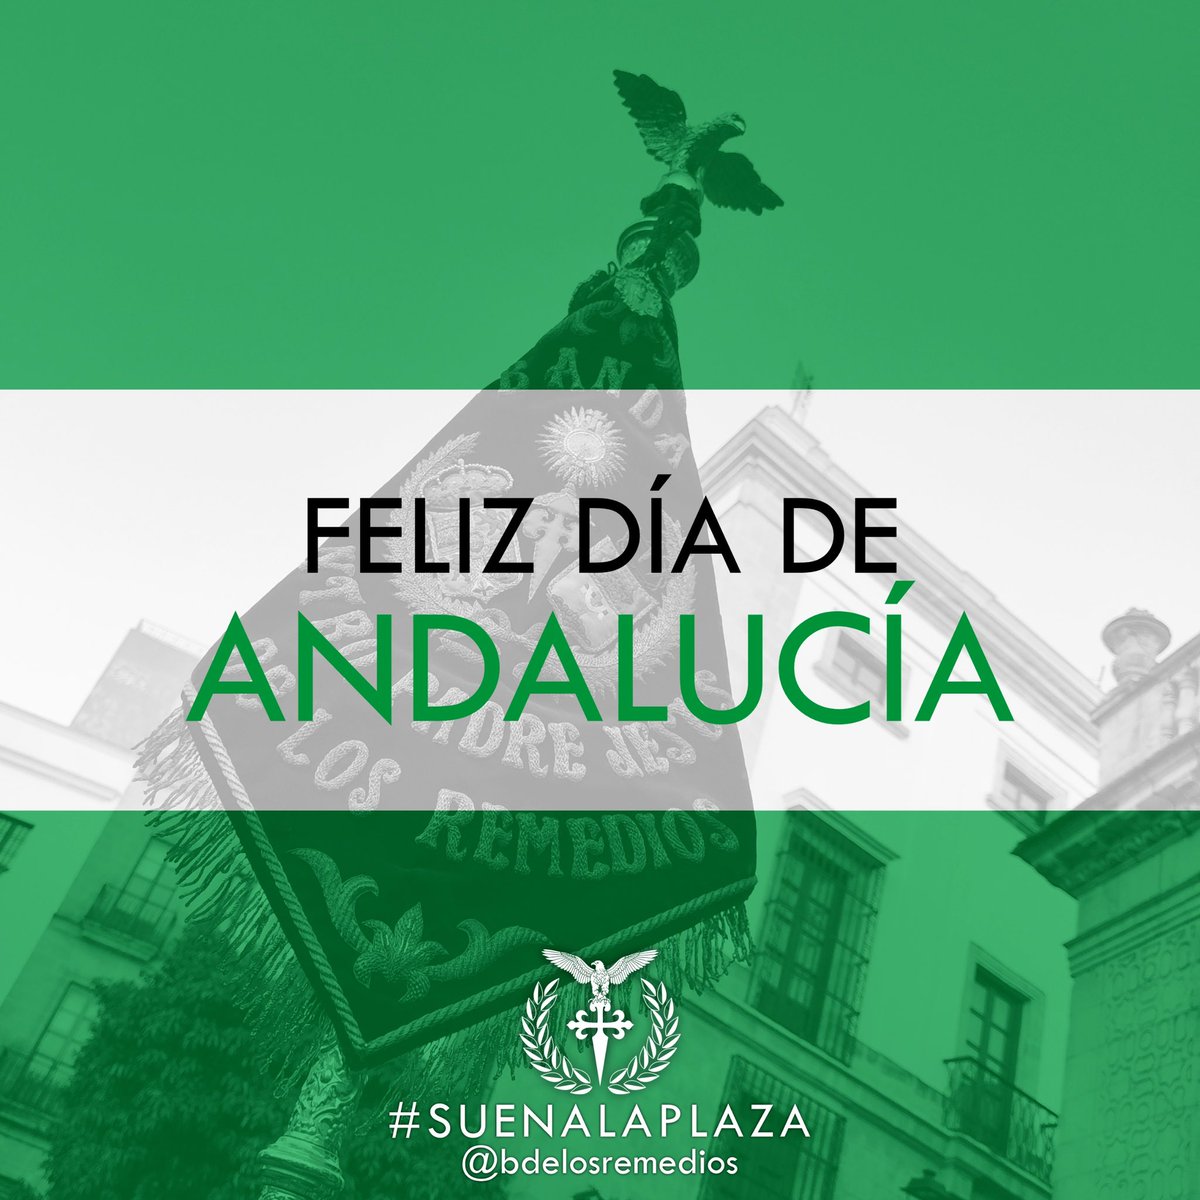 Andalucía por sí, para España y la Humanidad.

¡Feliz Día de Andalucía!

#SuenaLaPlaza #TDSCofrade #XVAniversario #DiaDeAndalucia #28DeFebrero #Sevilla #Andalucia